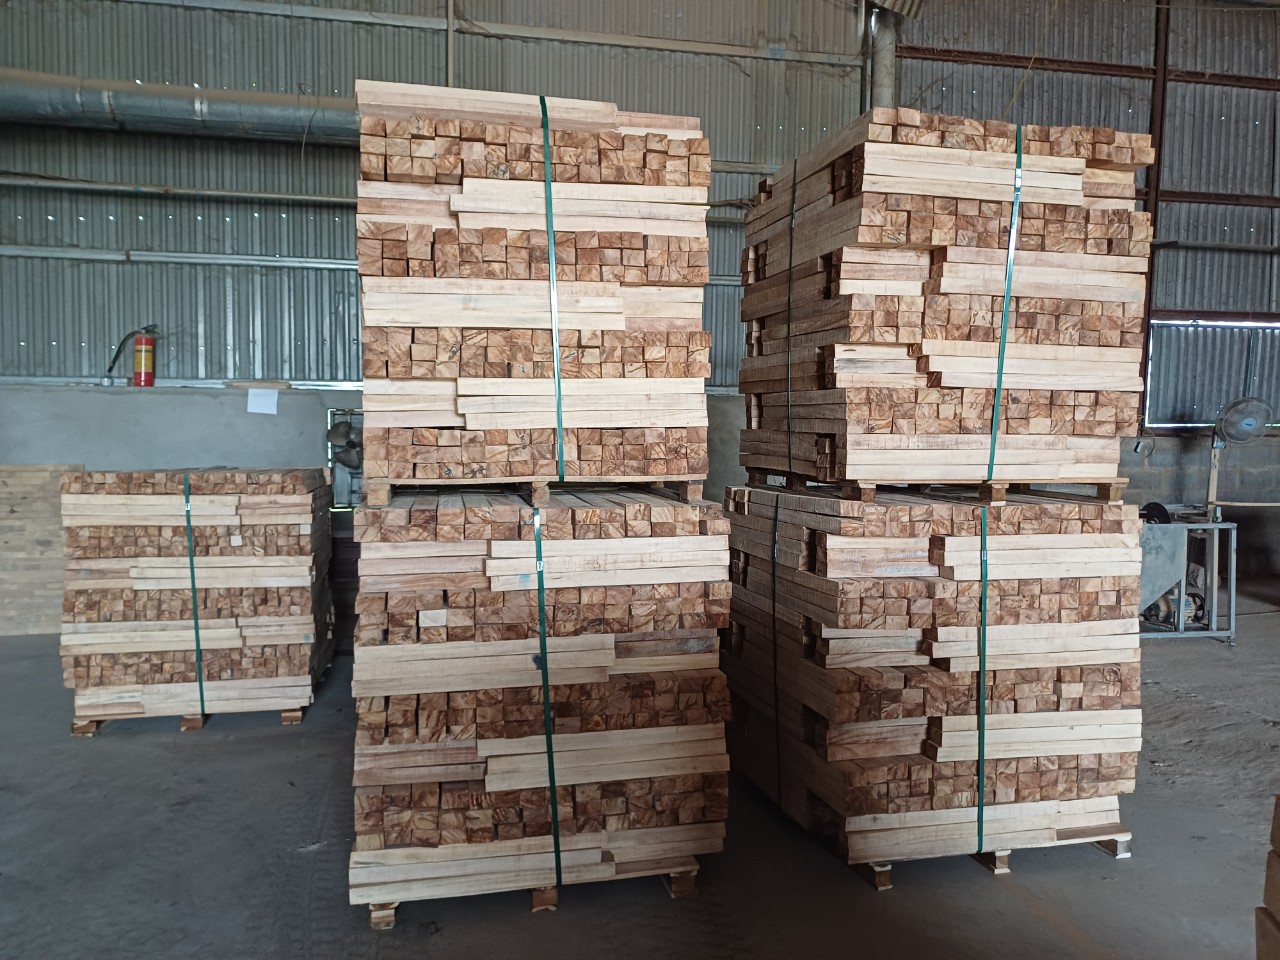 Cần tìm đơn vị vận tải vận chuyển mặt hàng gỗ xẻ đi Ấn Độ